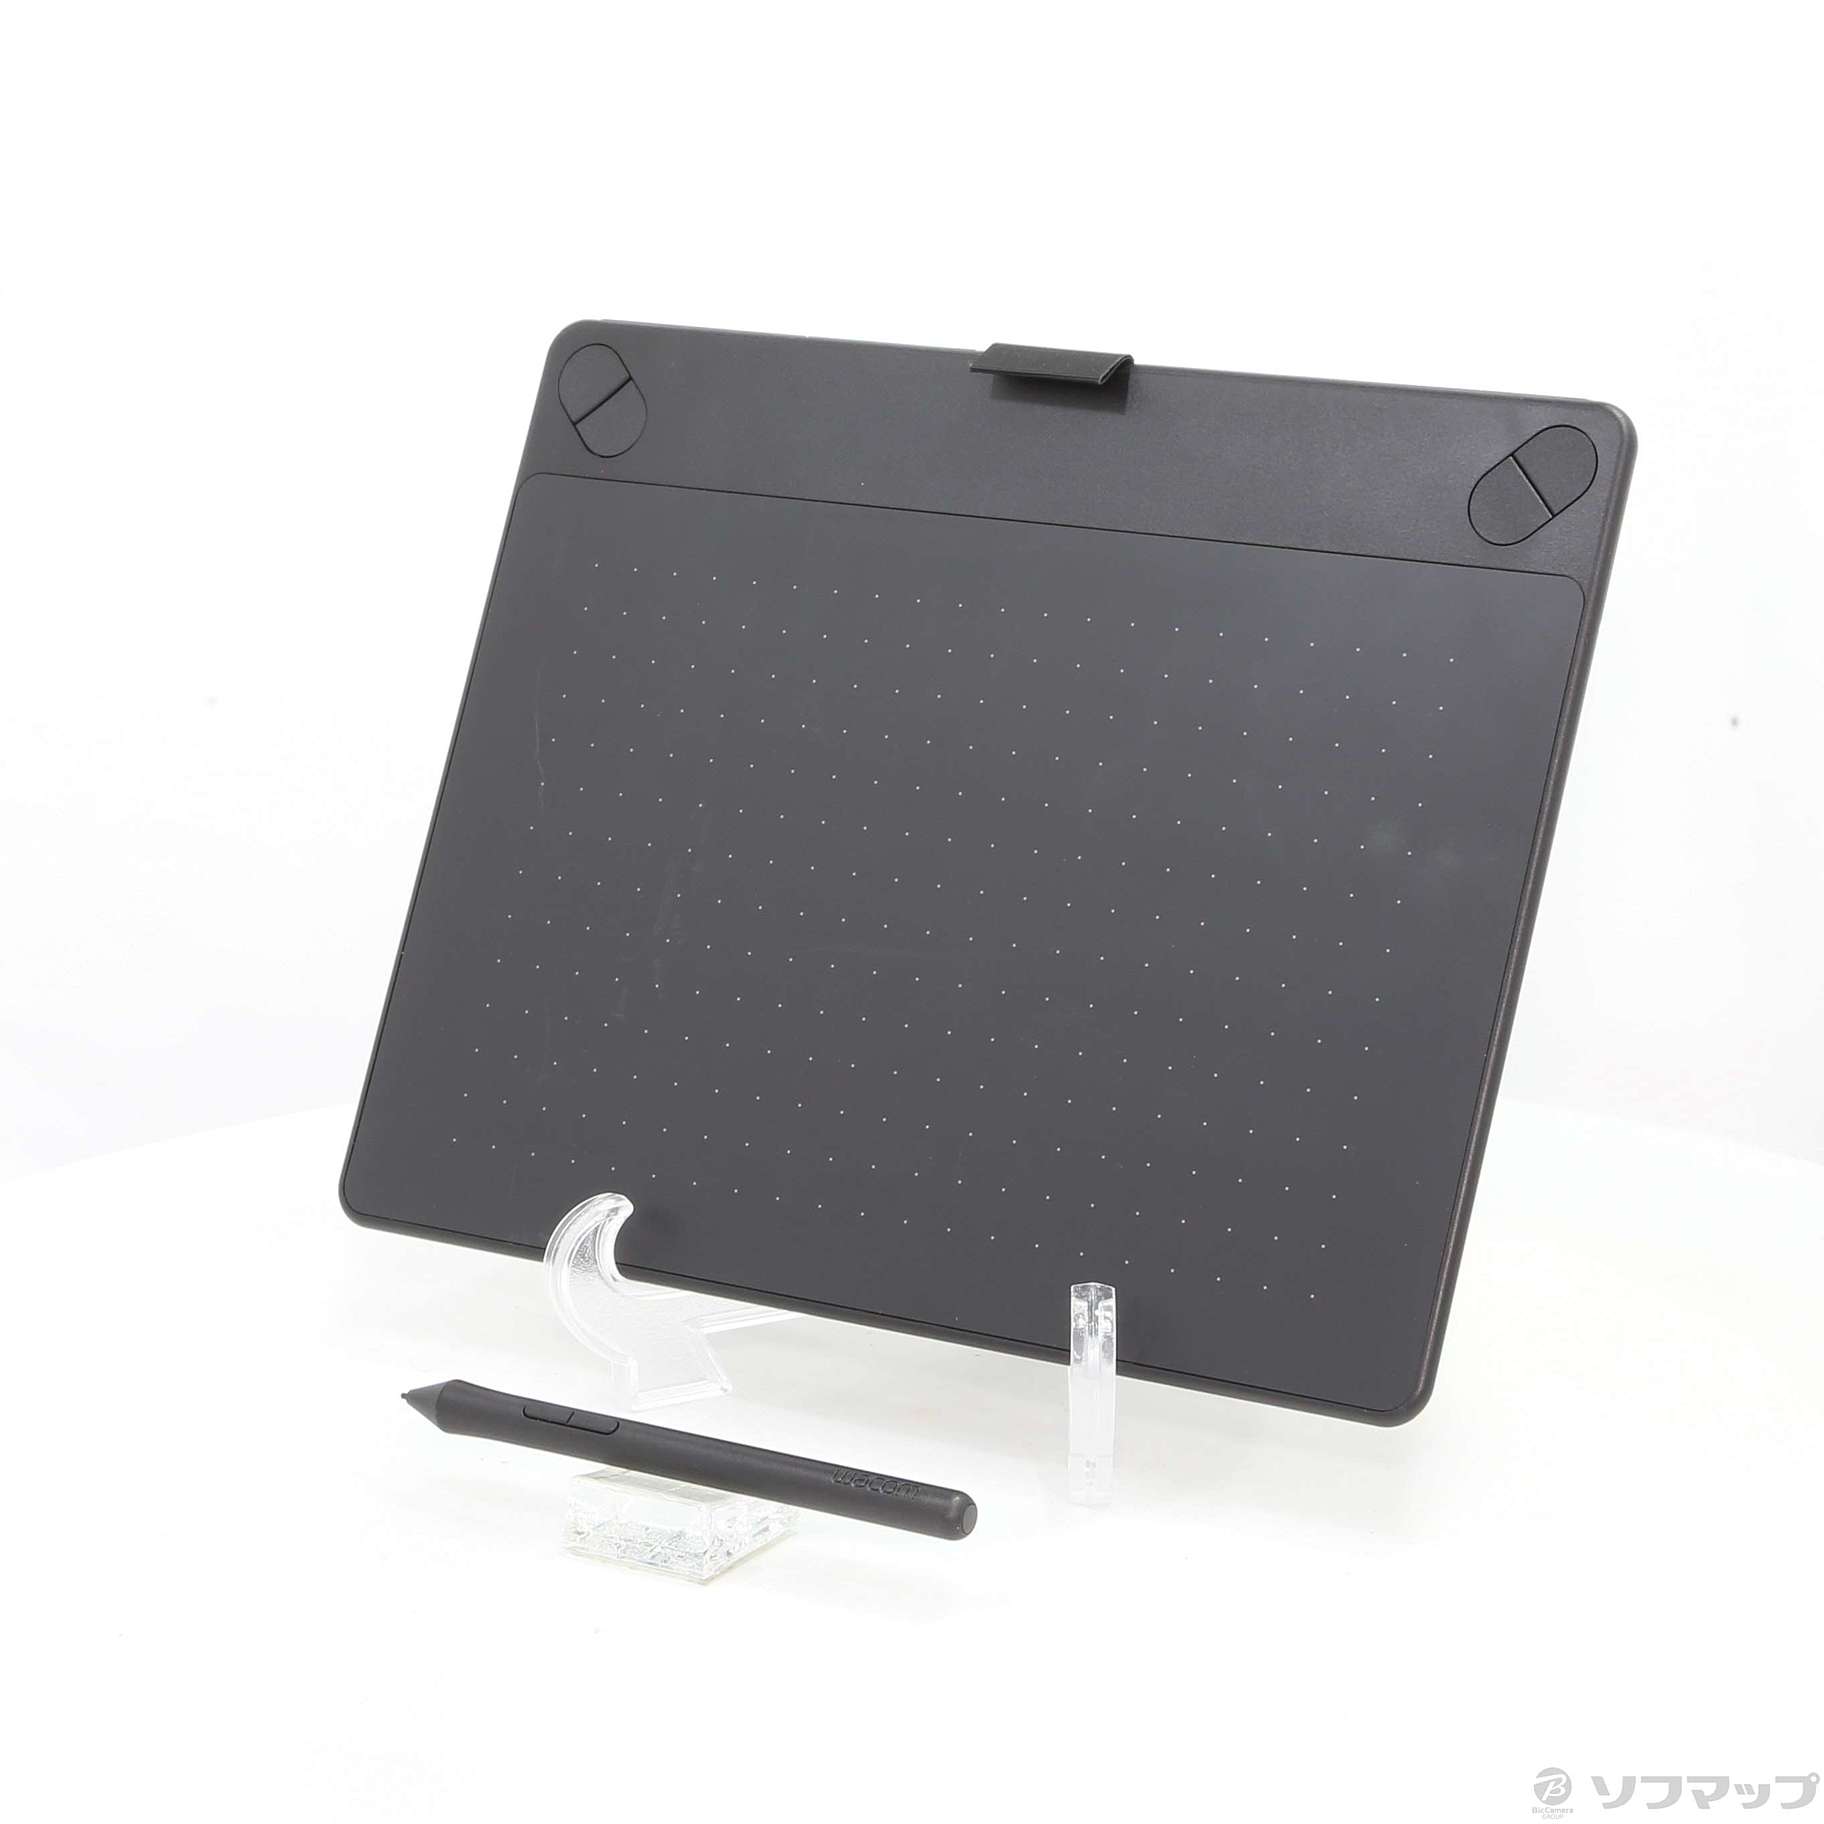 ワコムWacom Intuos 3D ペンタブレットCTH-690/K2